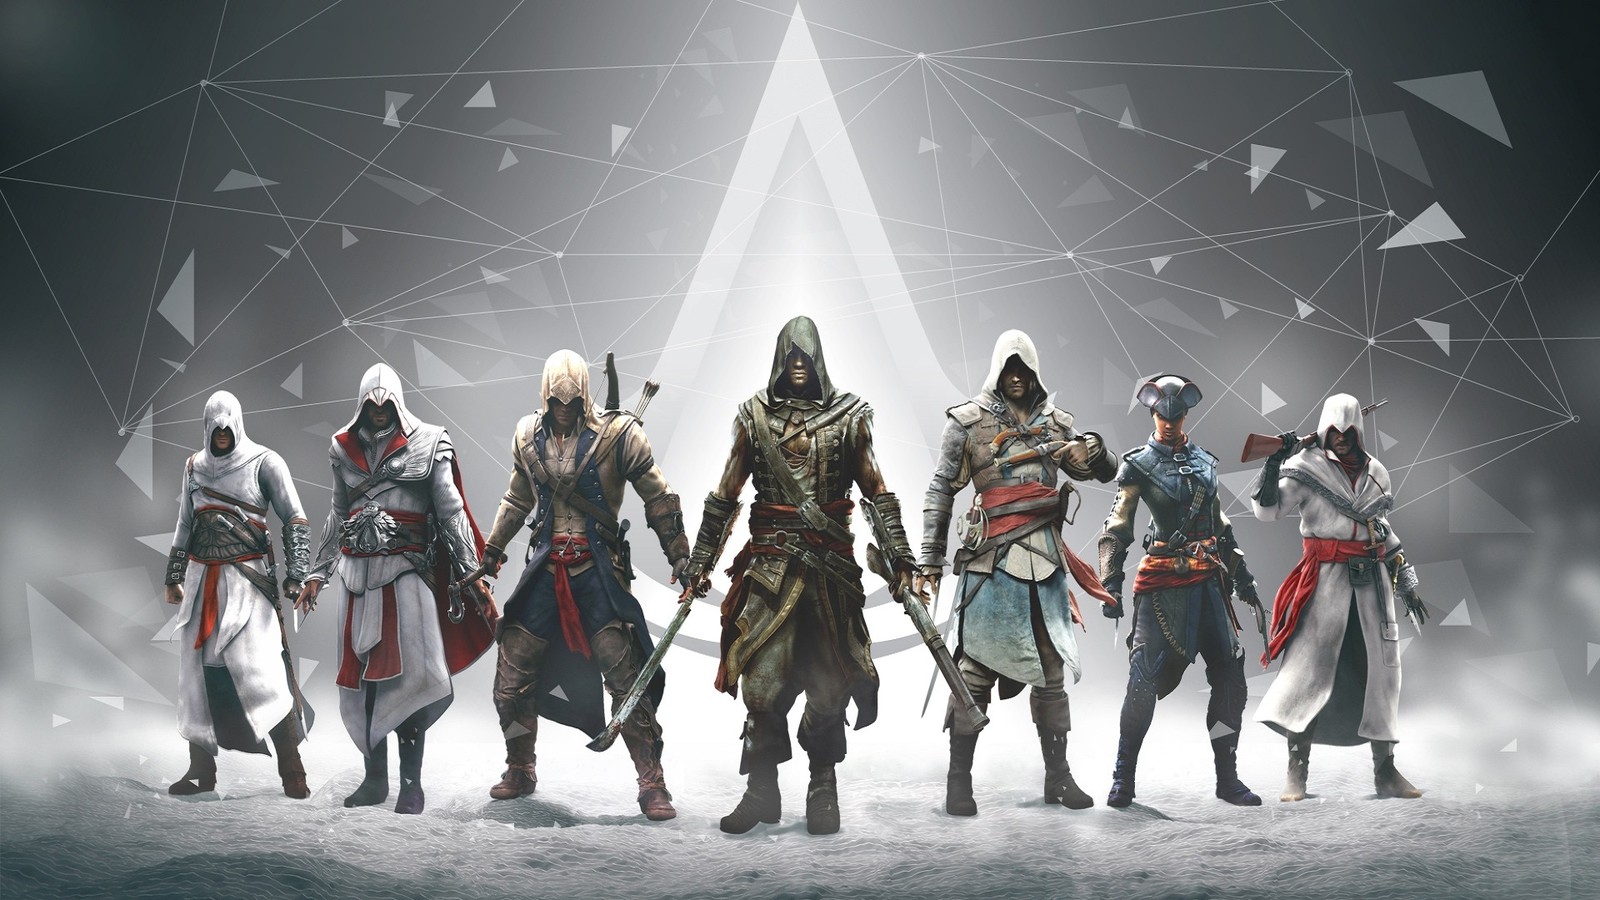 Похоже, следующая Assassin’s Creed возвращается к своим ближневосточным корням